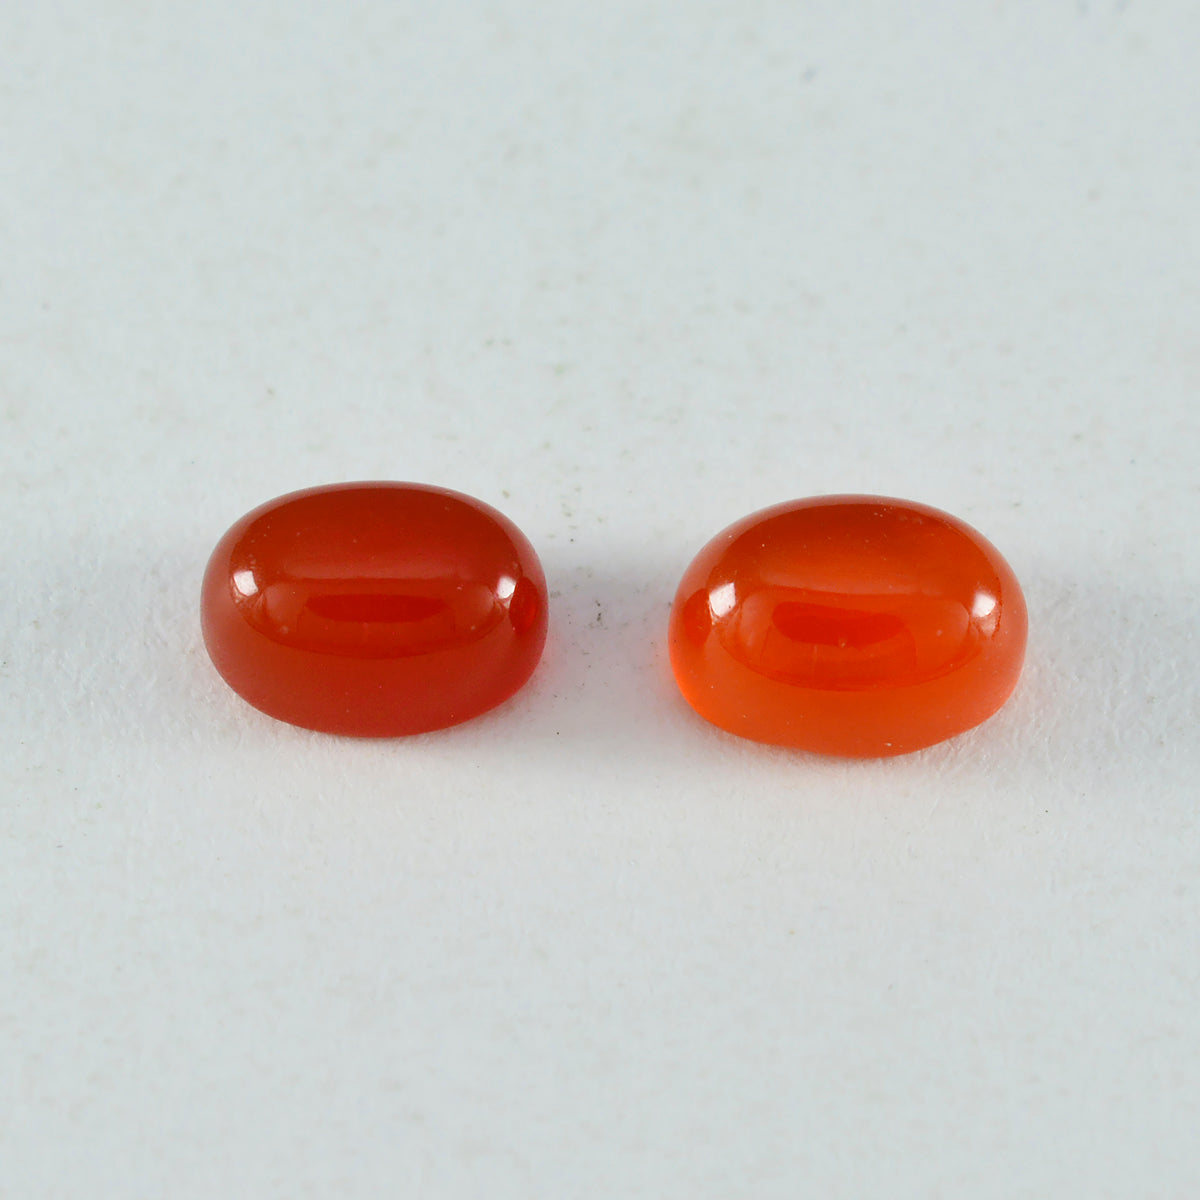 Riyogems 1PC Red Onyx Cabochon 9x11 mm Oval Shape A1 Quality Gems